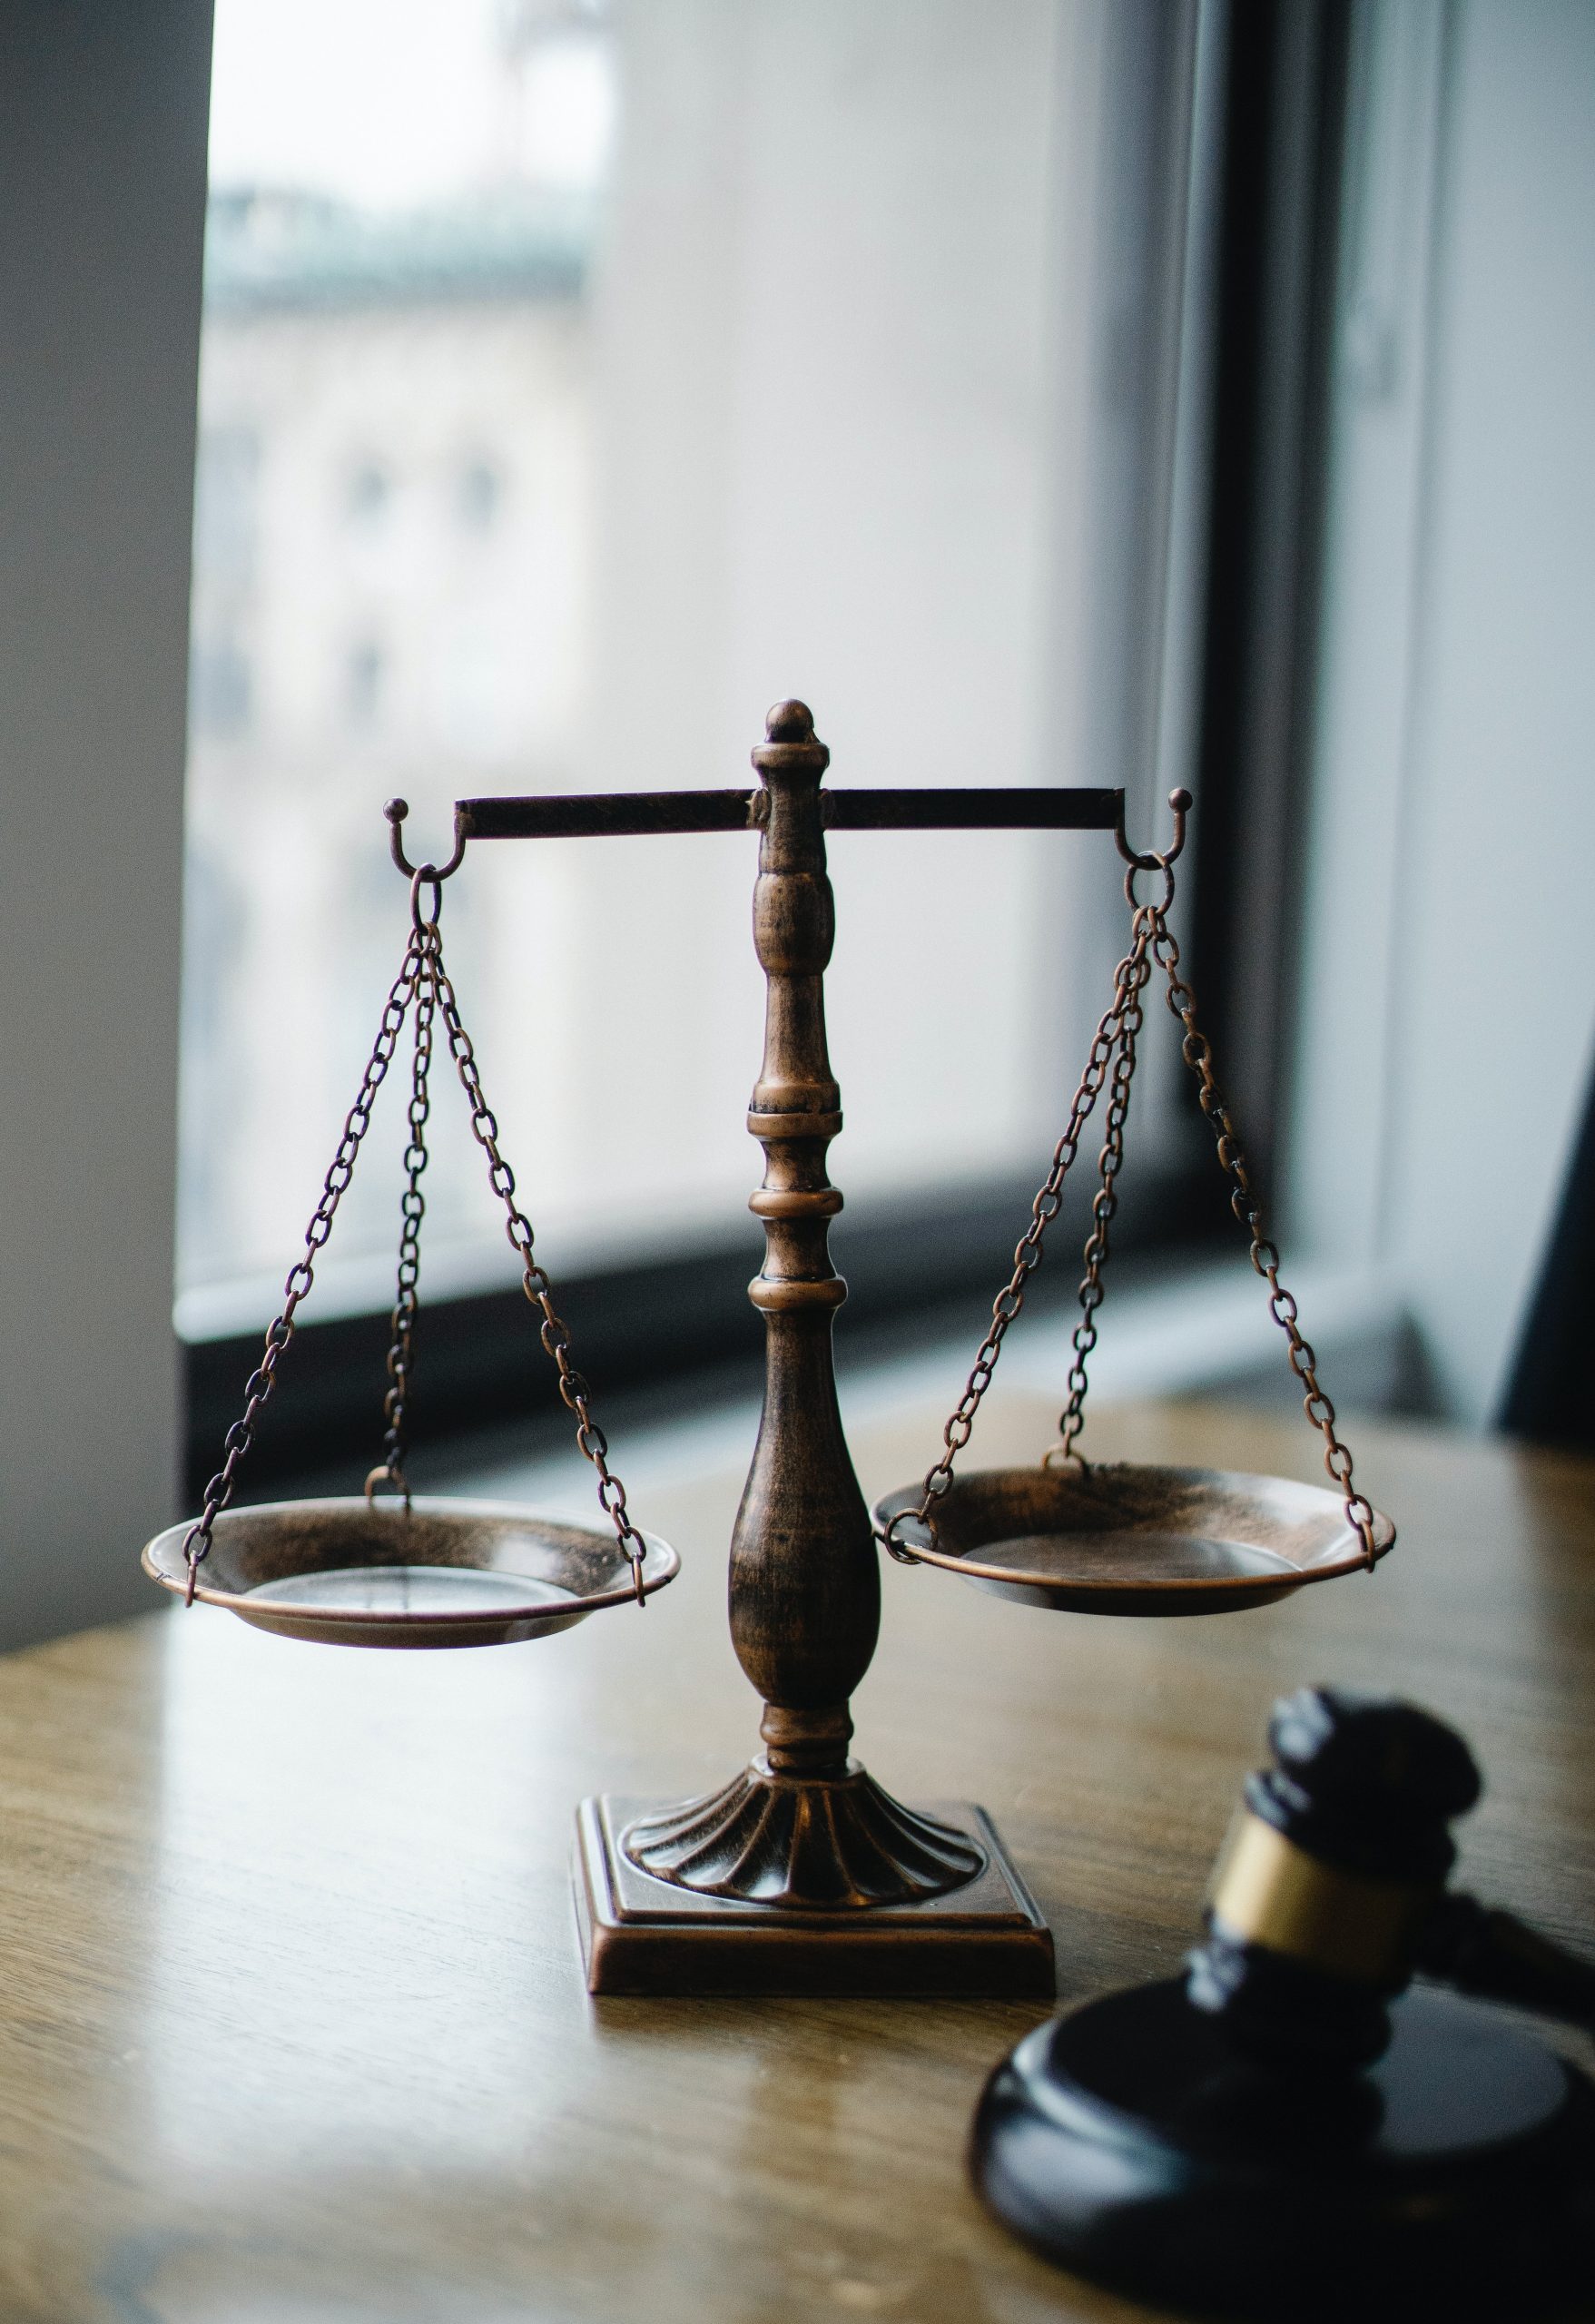 Eine klassische Waage der Justiz auf einem Tisch, neben einem Richterhammer, symbolisch für Recht und Gerechtigkeit, was die Bedeutung einer Rechtsschutzversicherung für den juristischen Beistand in rechtlichen Angelegenheiten darstellt.